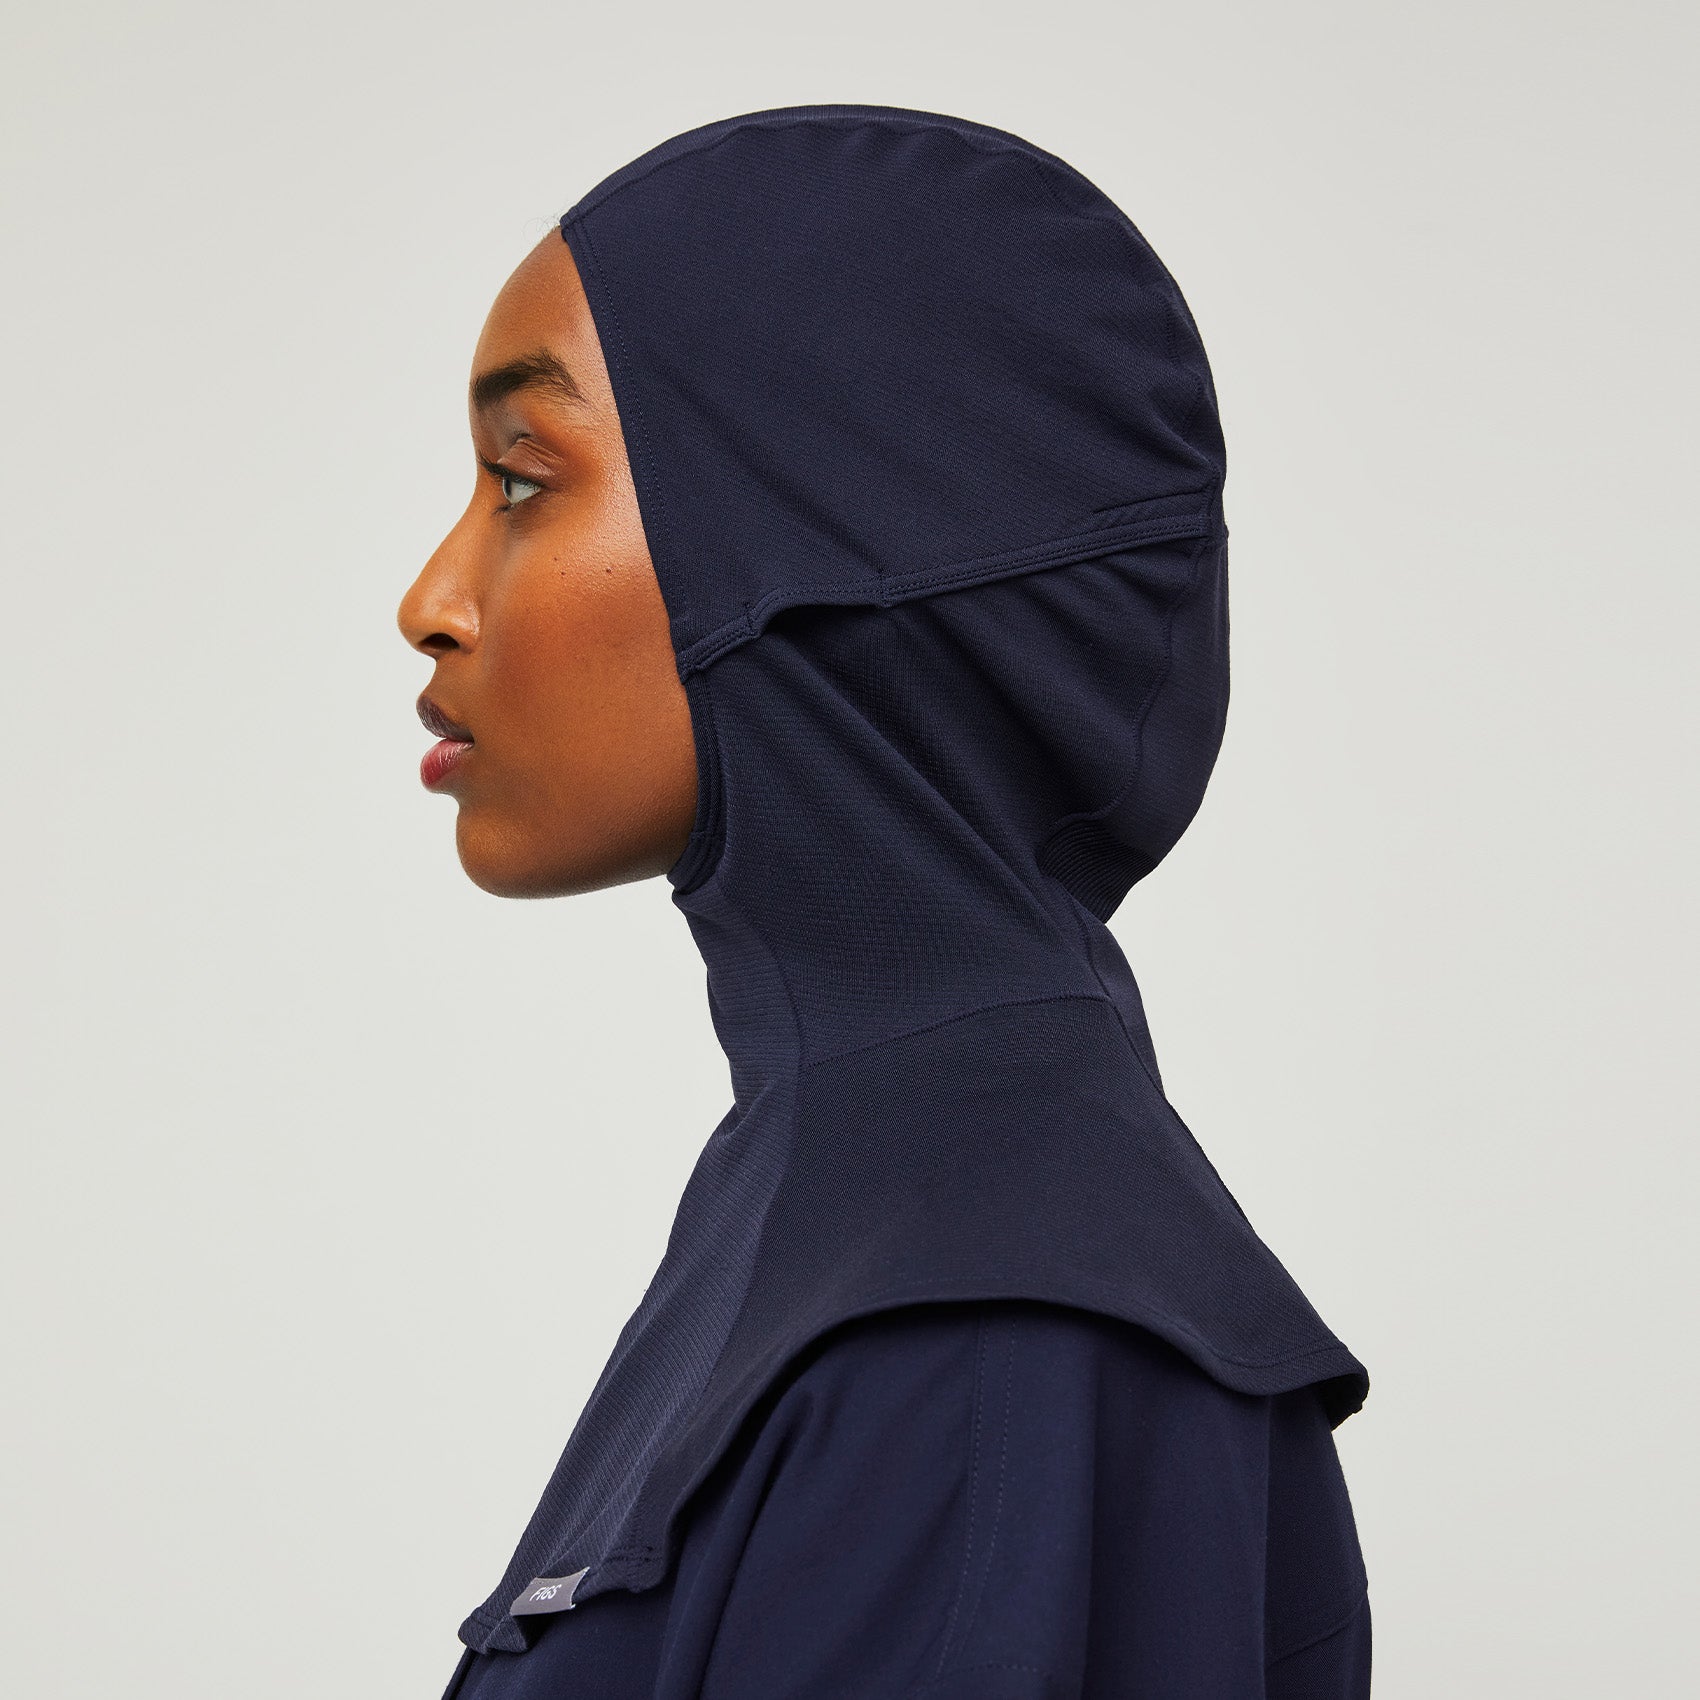 https://cdn.shopify.com/s/files/1/0139/8942/products/Womens-Hijab-navy-3.jpg?v=1635381590